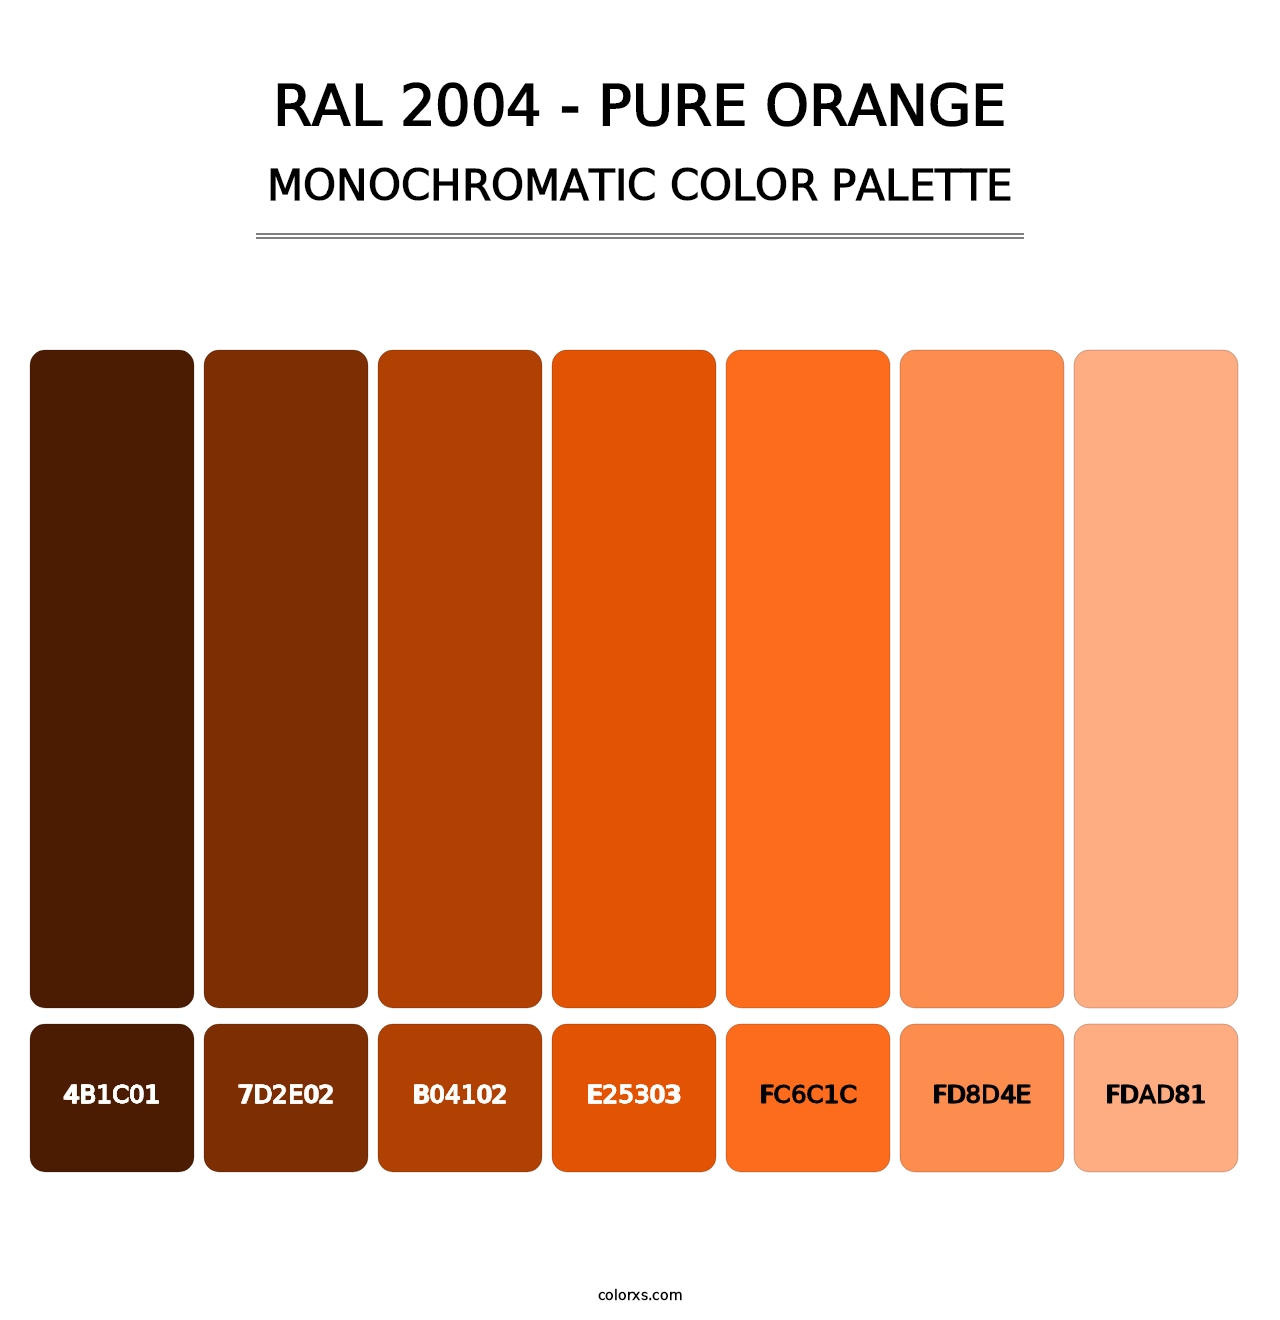 RAL 2004 - Pure Orange - Monochromatic Color Palette